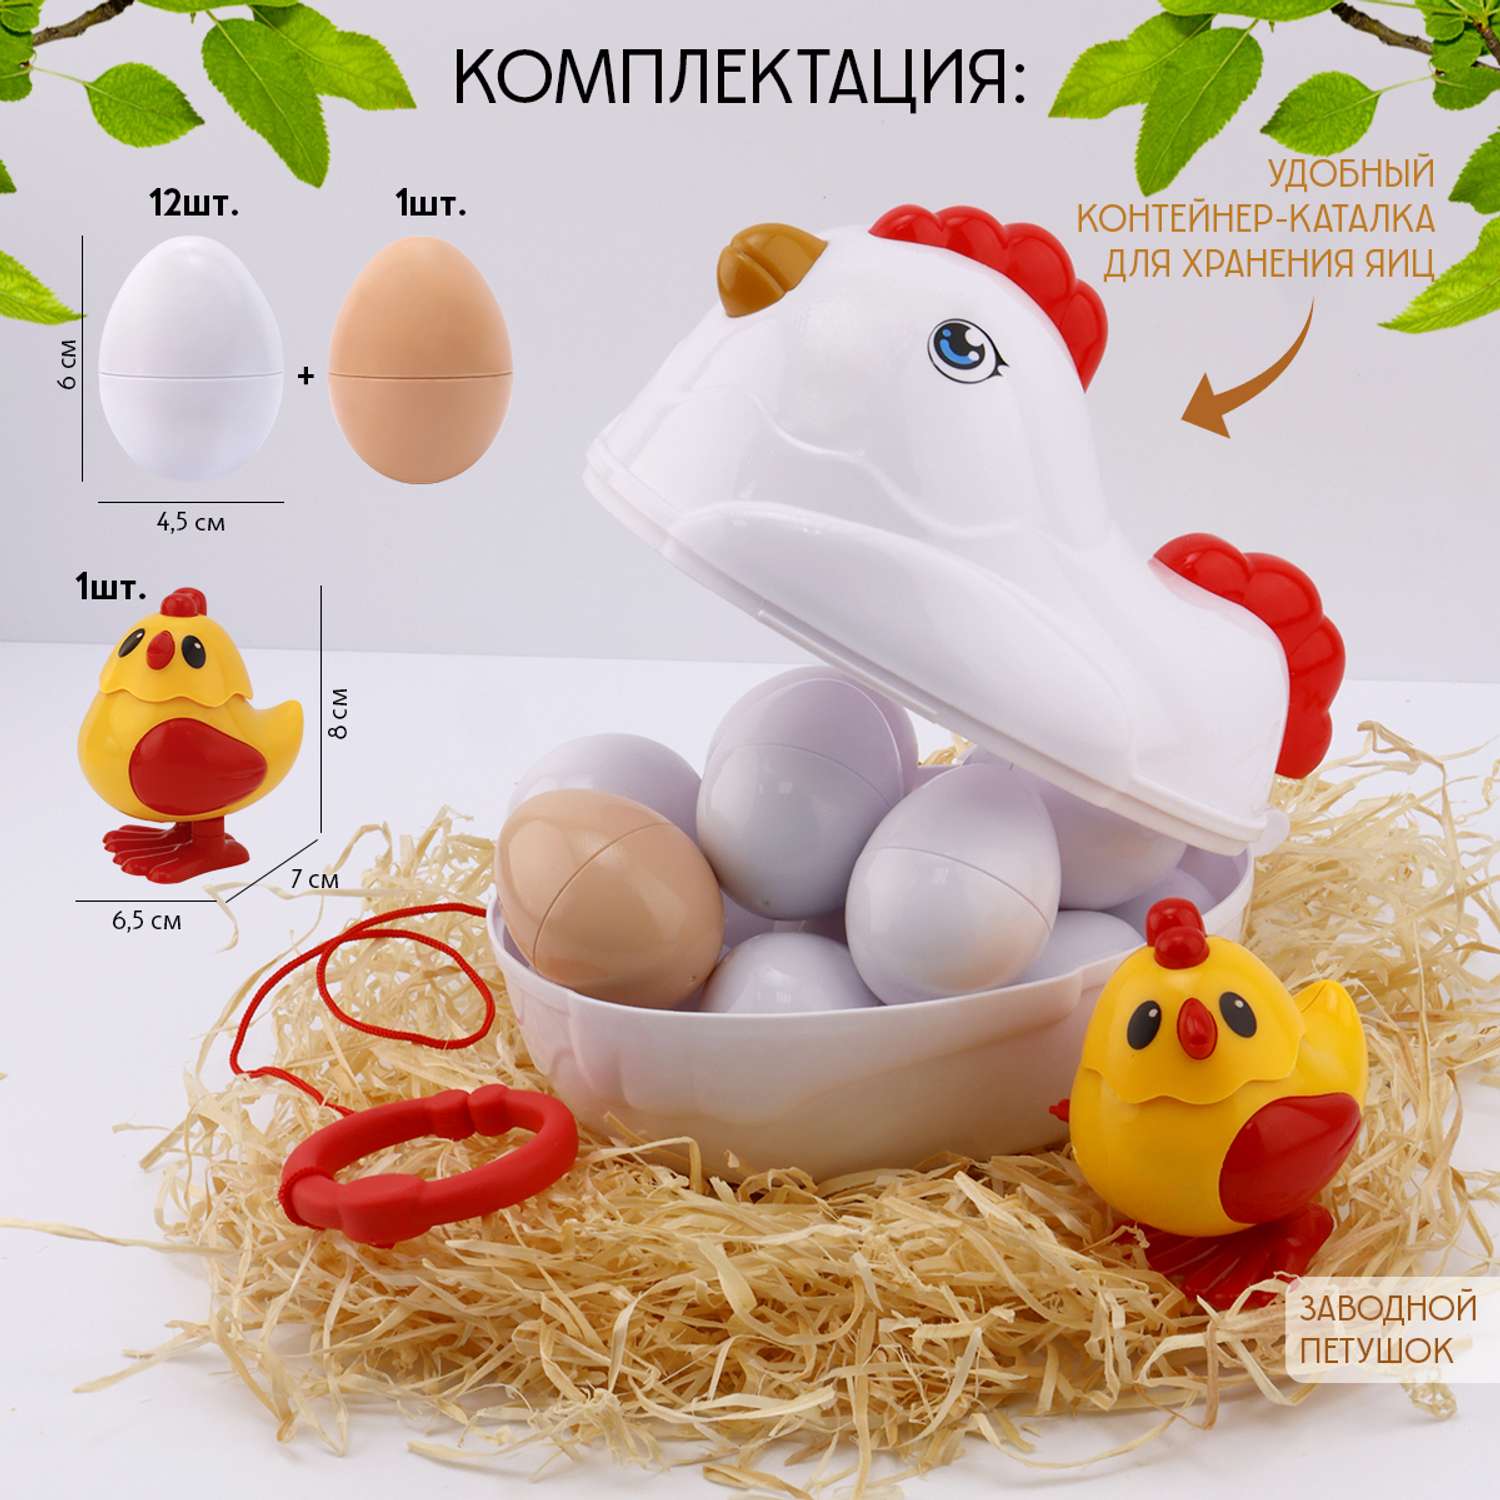 Сортер яйца в курочке S+S развивающая игрушка - фото 2